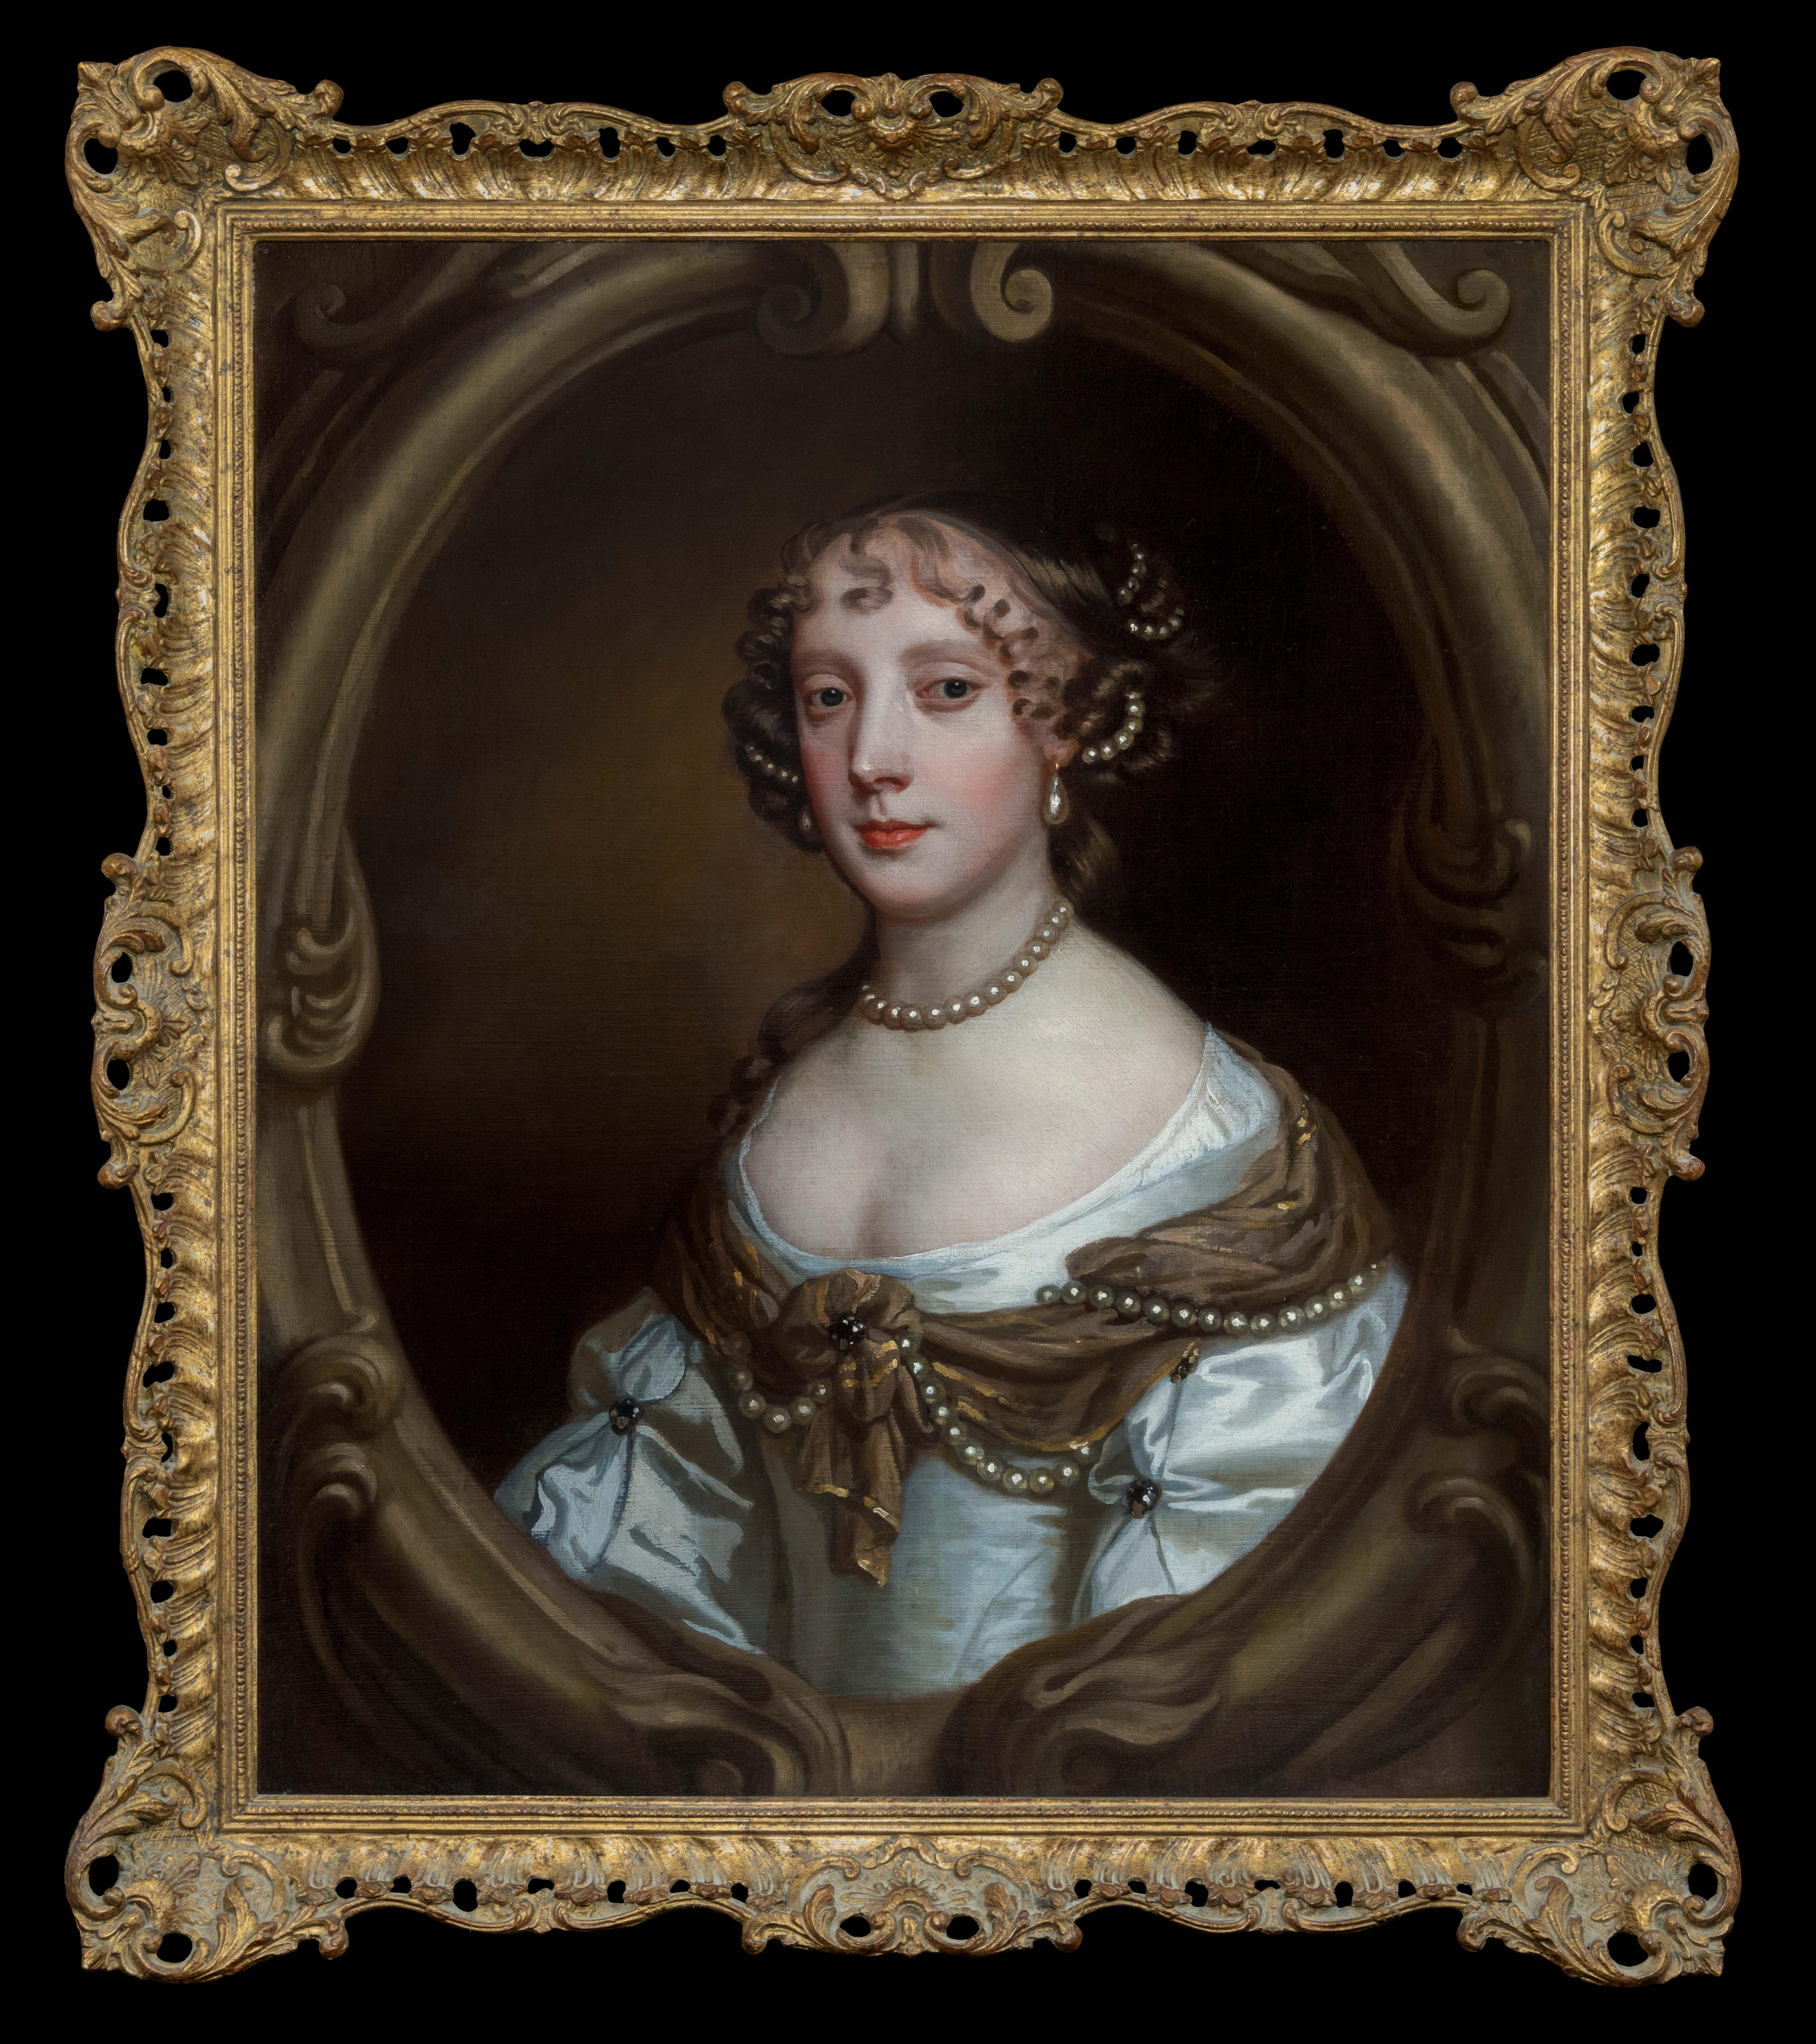 Portrait de Grace Saunderson, vicomtesse Castleton (1635-1667) c.1665-67
Sir Peters et son Studio (1618-1680)

Titan Fine Art présente cette œuvre, qui faisait partie d'une collection de photos de famille et d'objets d'héritage de la famille